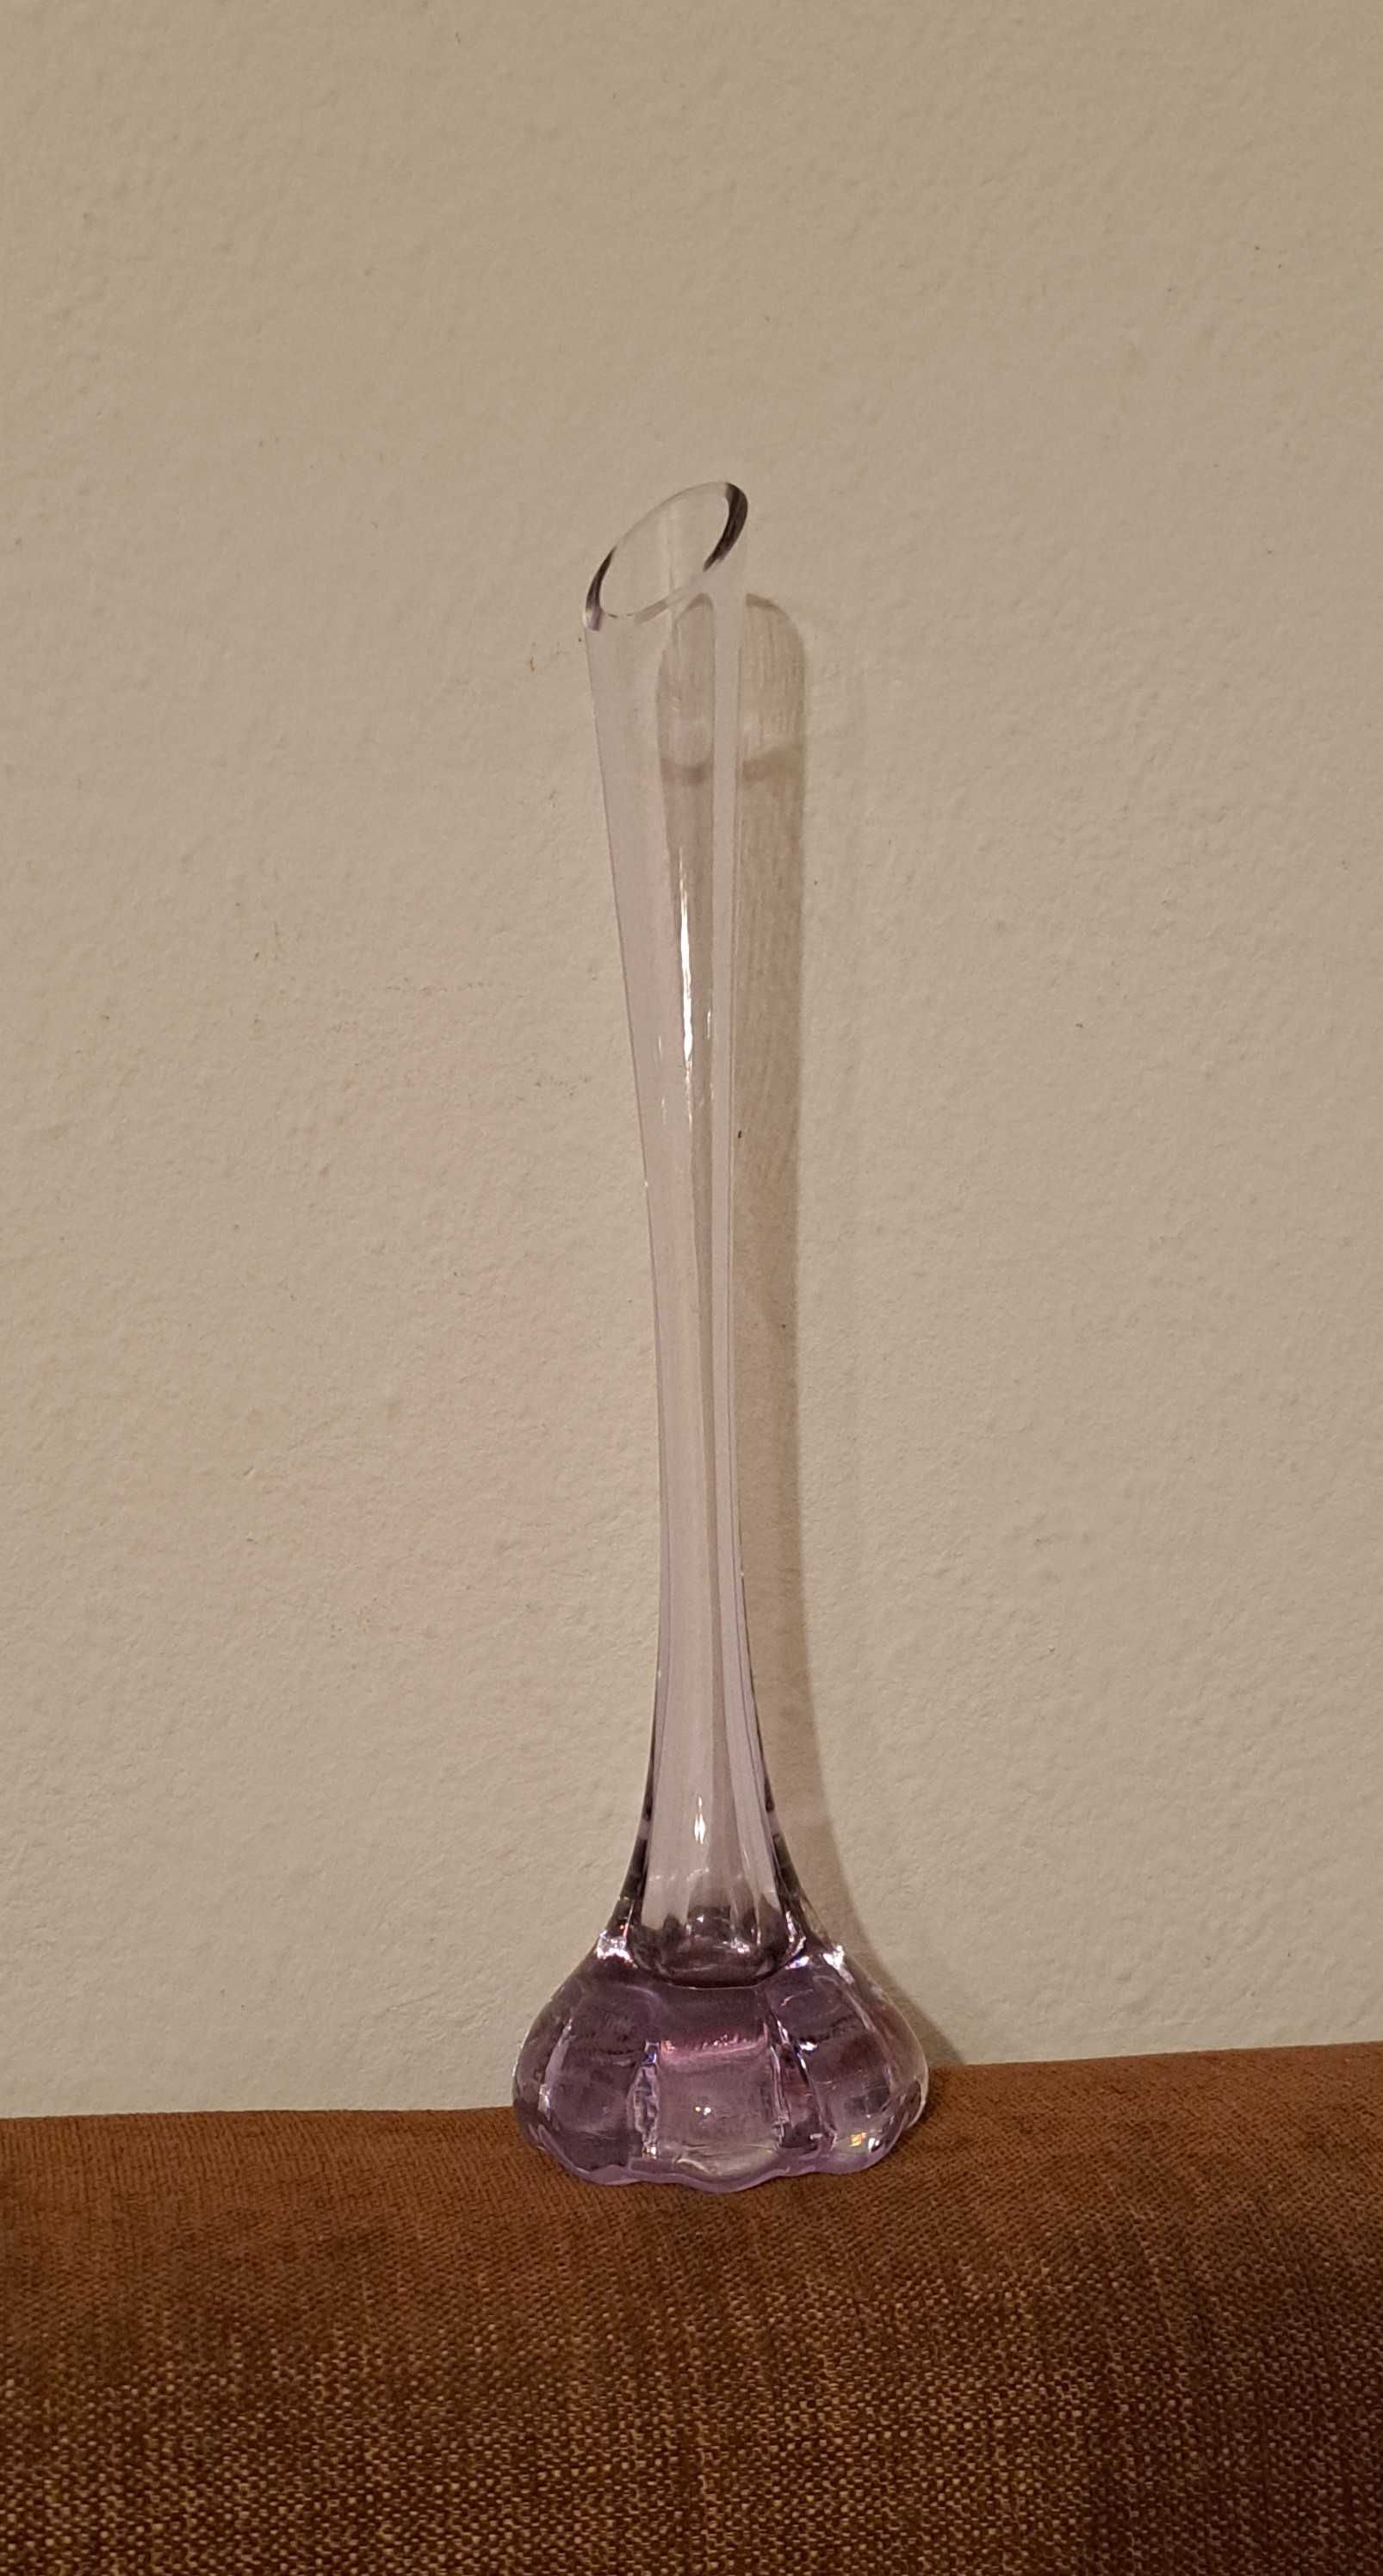 fioletowy szklany wazonik - tzw słonia noga